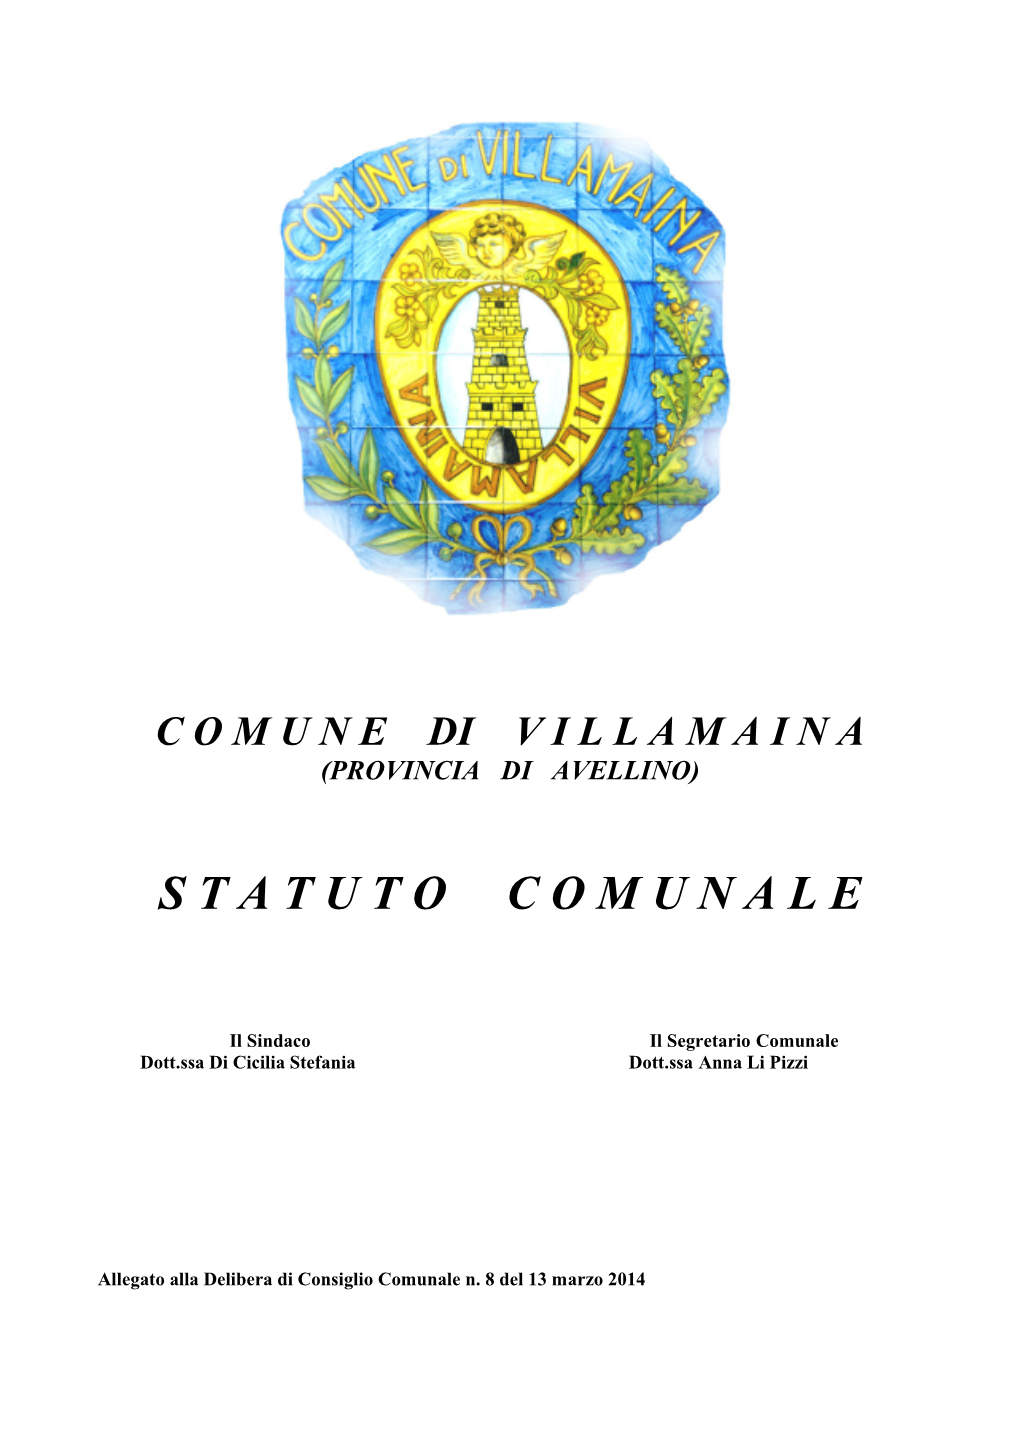 STATUTO COMUNE DI VILLAMAINA (AVELLINO) - Statuto Costituzionale (Art.114, Comma 2, Costituzione Italiana)